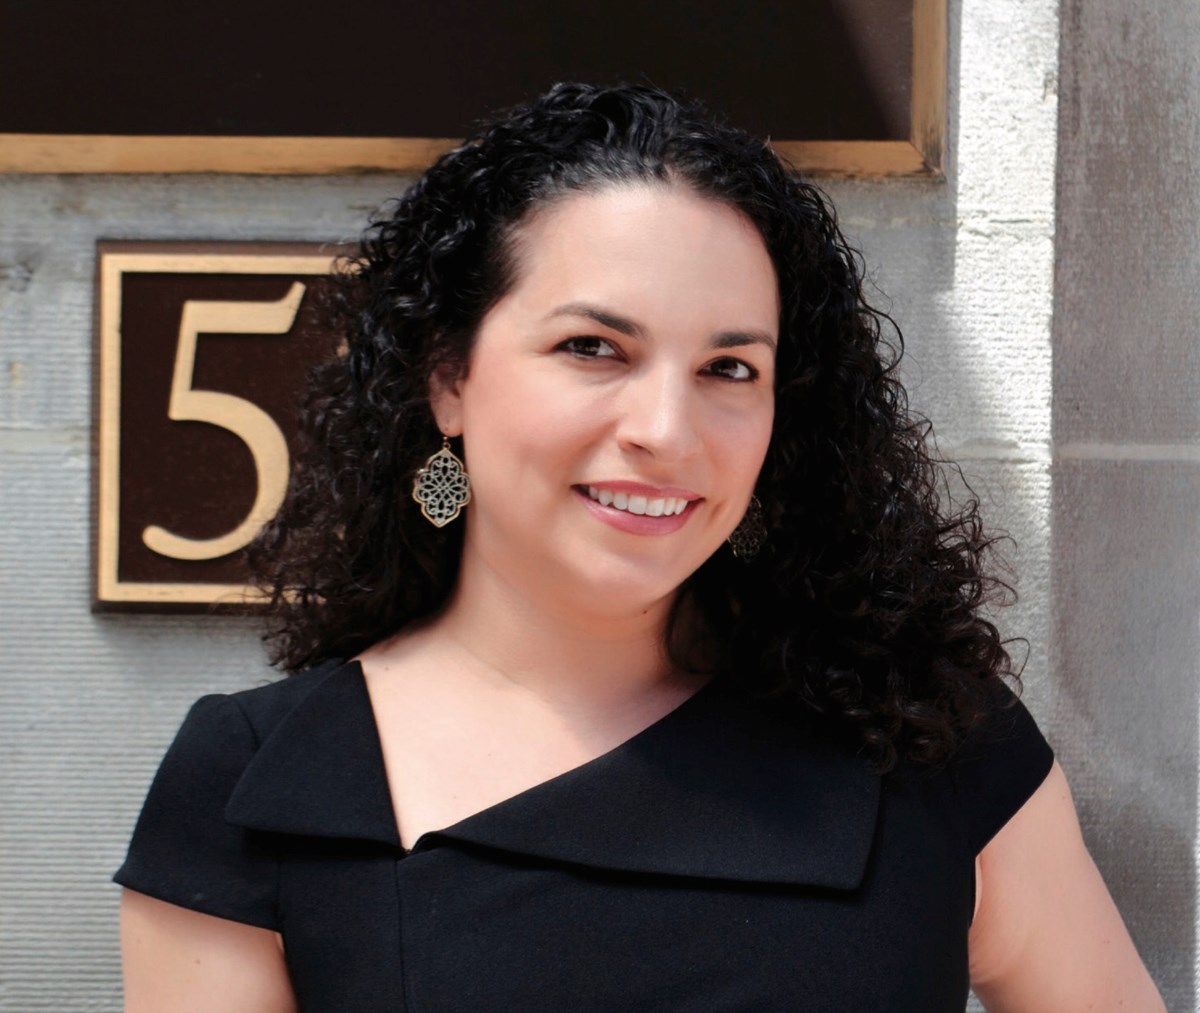 Nicole Gonzalez Van Cleve is a tenured Associate Professor in the Department of Sociology at Brown University.